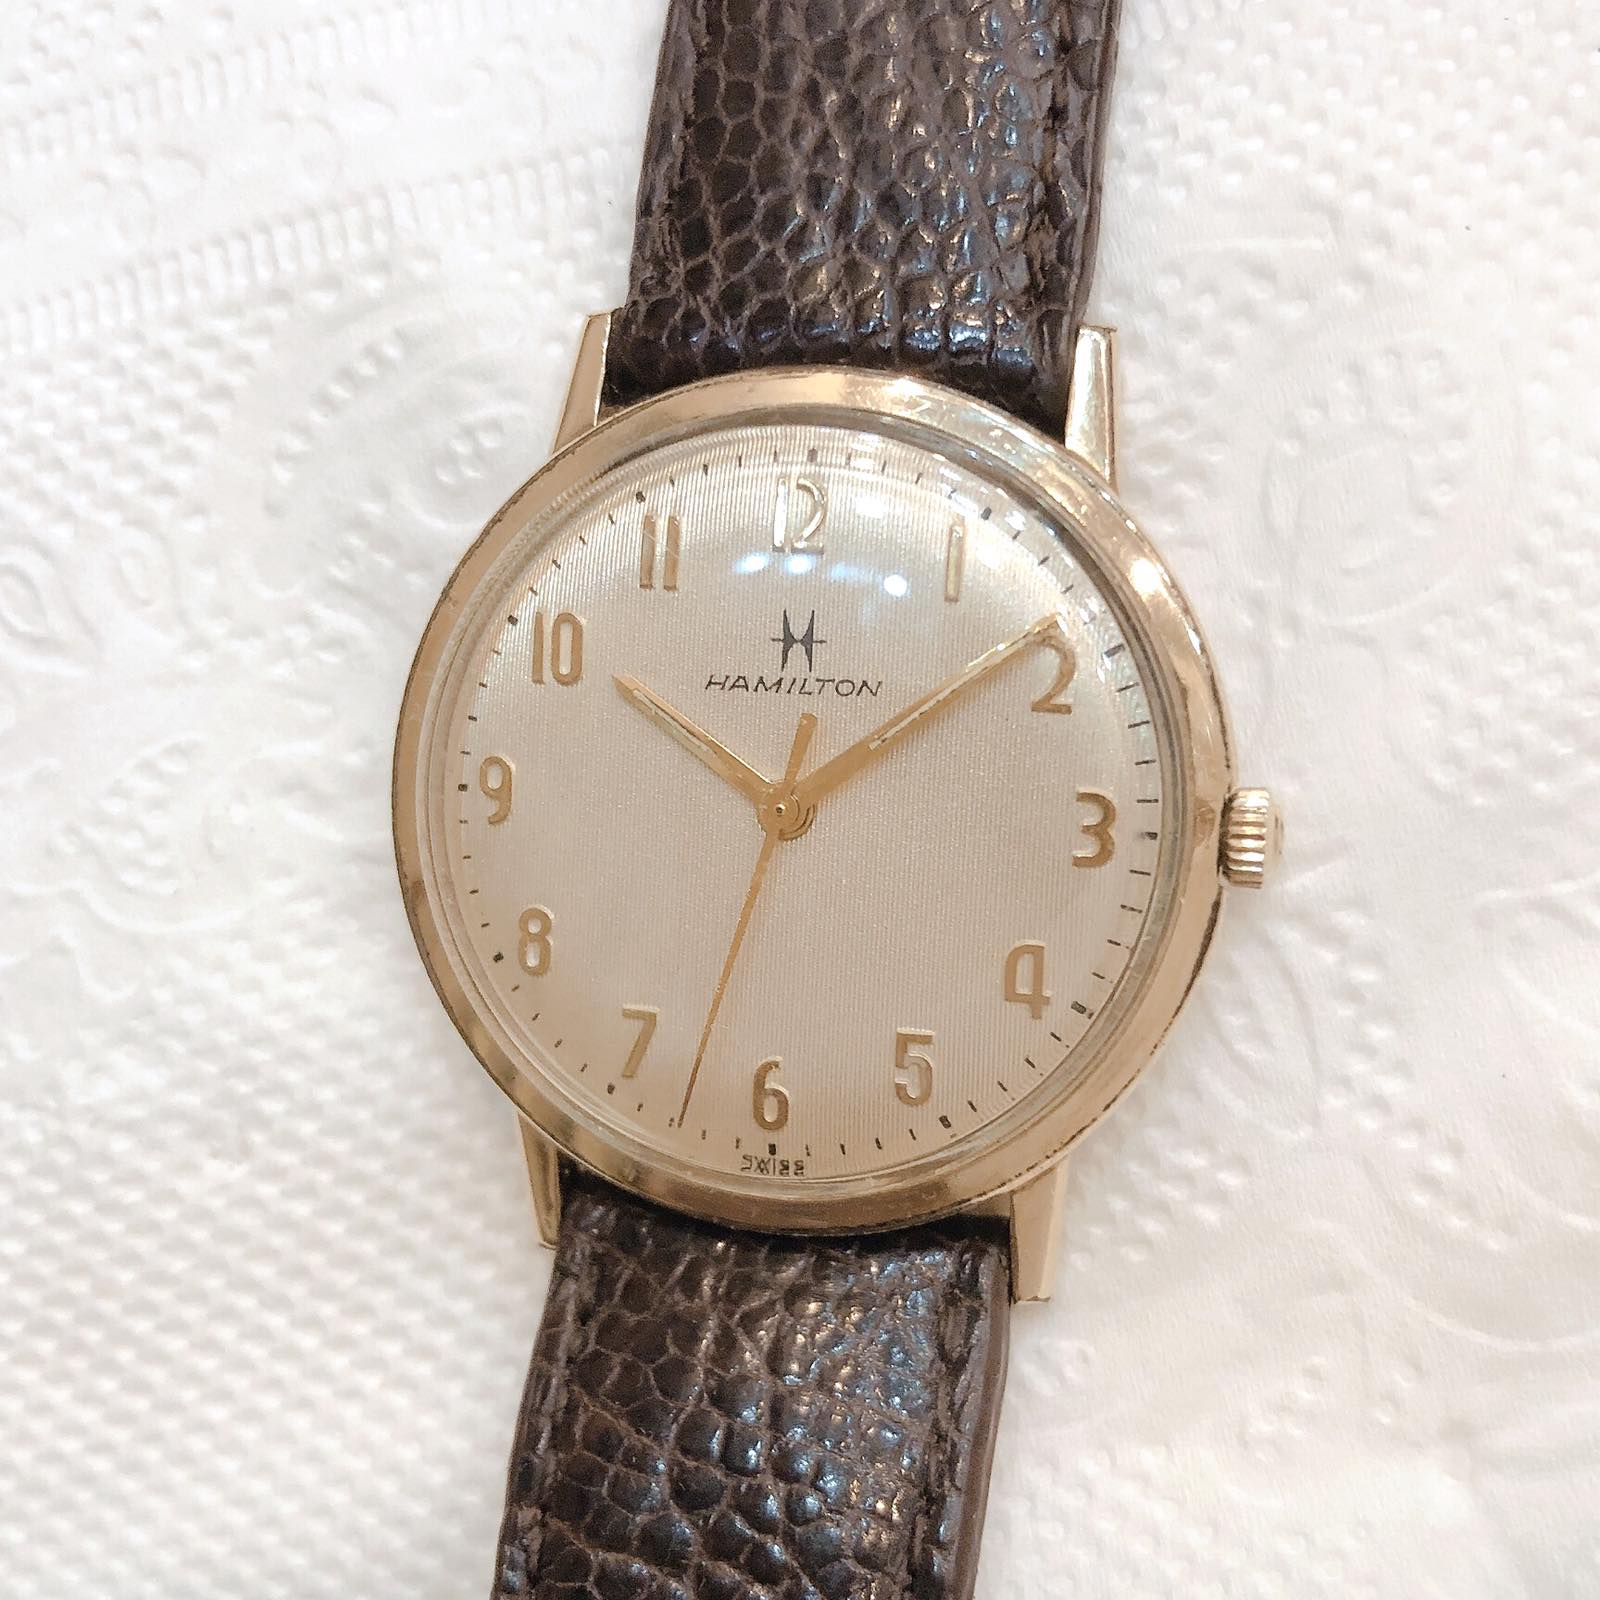 Đồng hồ cổ Hamilton lên dây thuỵ sỹ bọc vàng 10k RGP chính hãng Thụy Sỹ